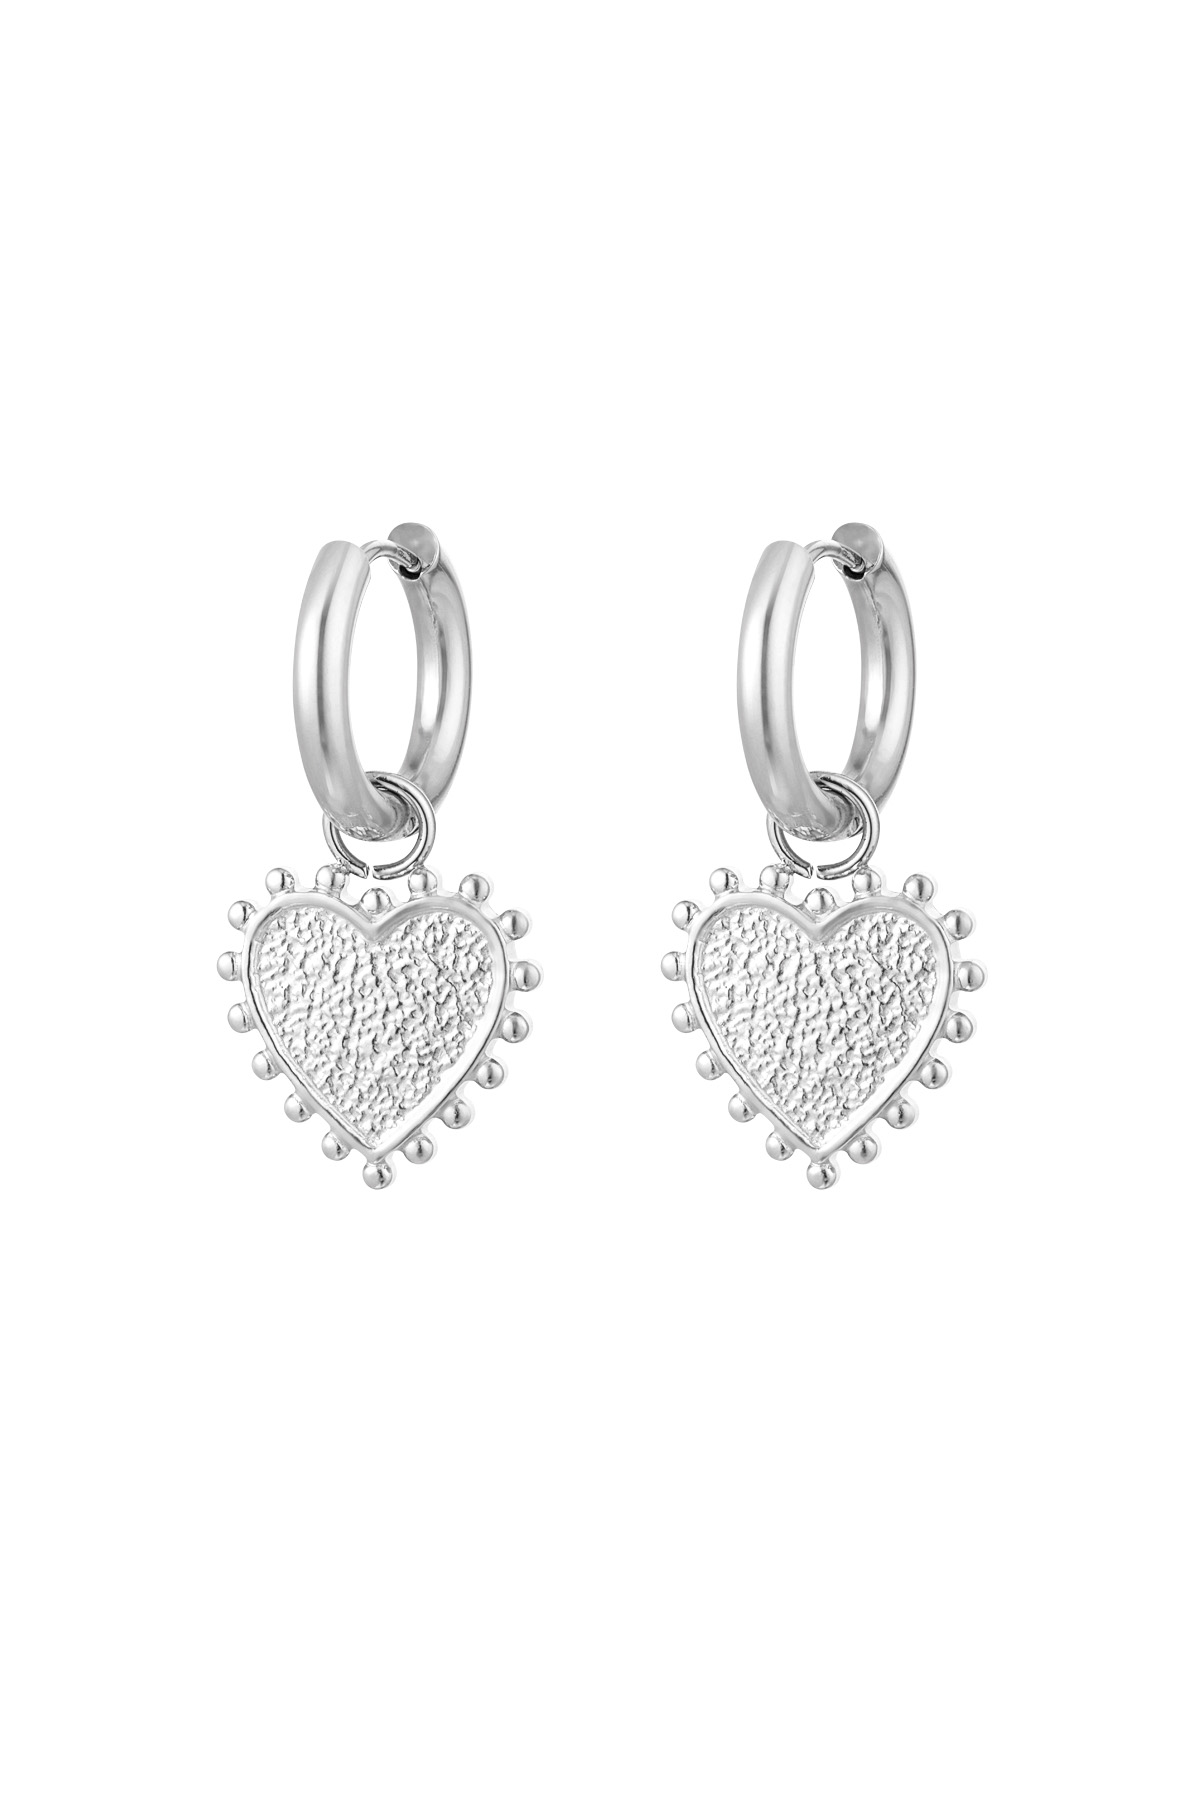 Orecchini cuore decorato - argento h5 